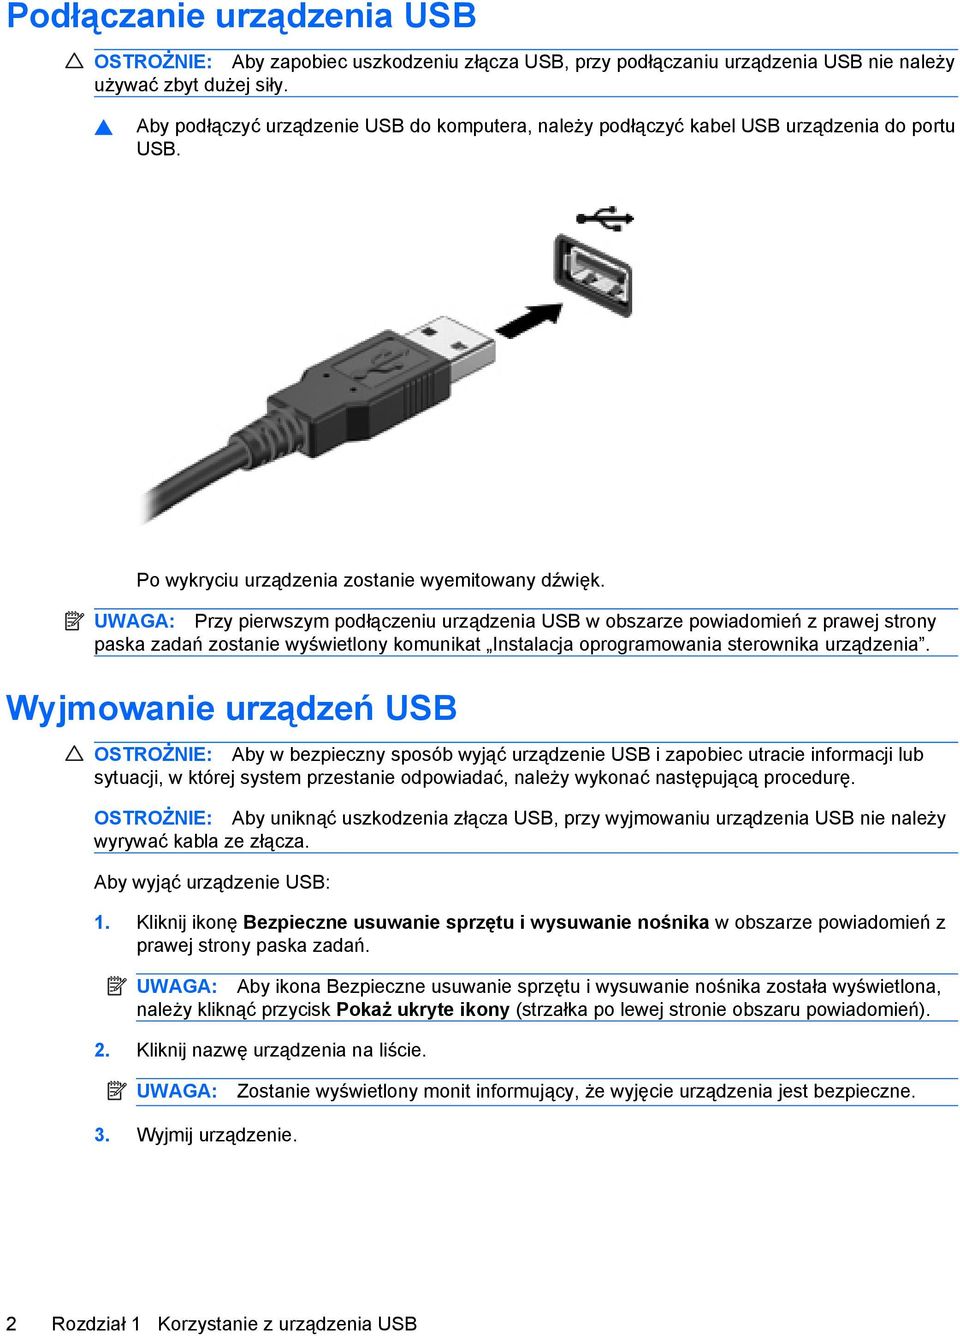 UWAGA: Przy pierwszym podłączeniu urządzenia USB w obszarze powiadomień z prawej strony paska zadań zostanie wyświetlony komunikat Instalacja oprogramowania sterownika urządzenia.